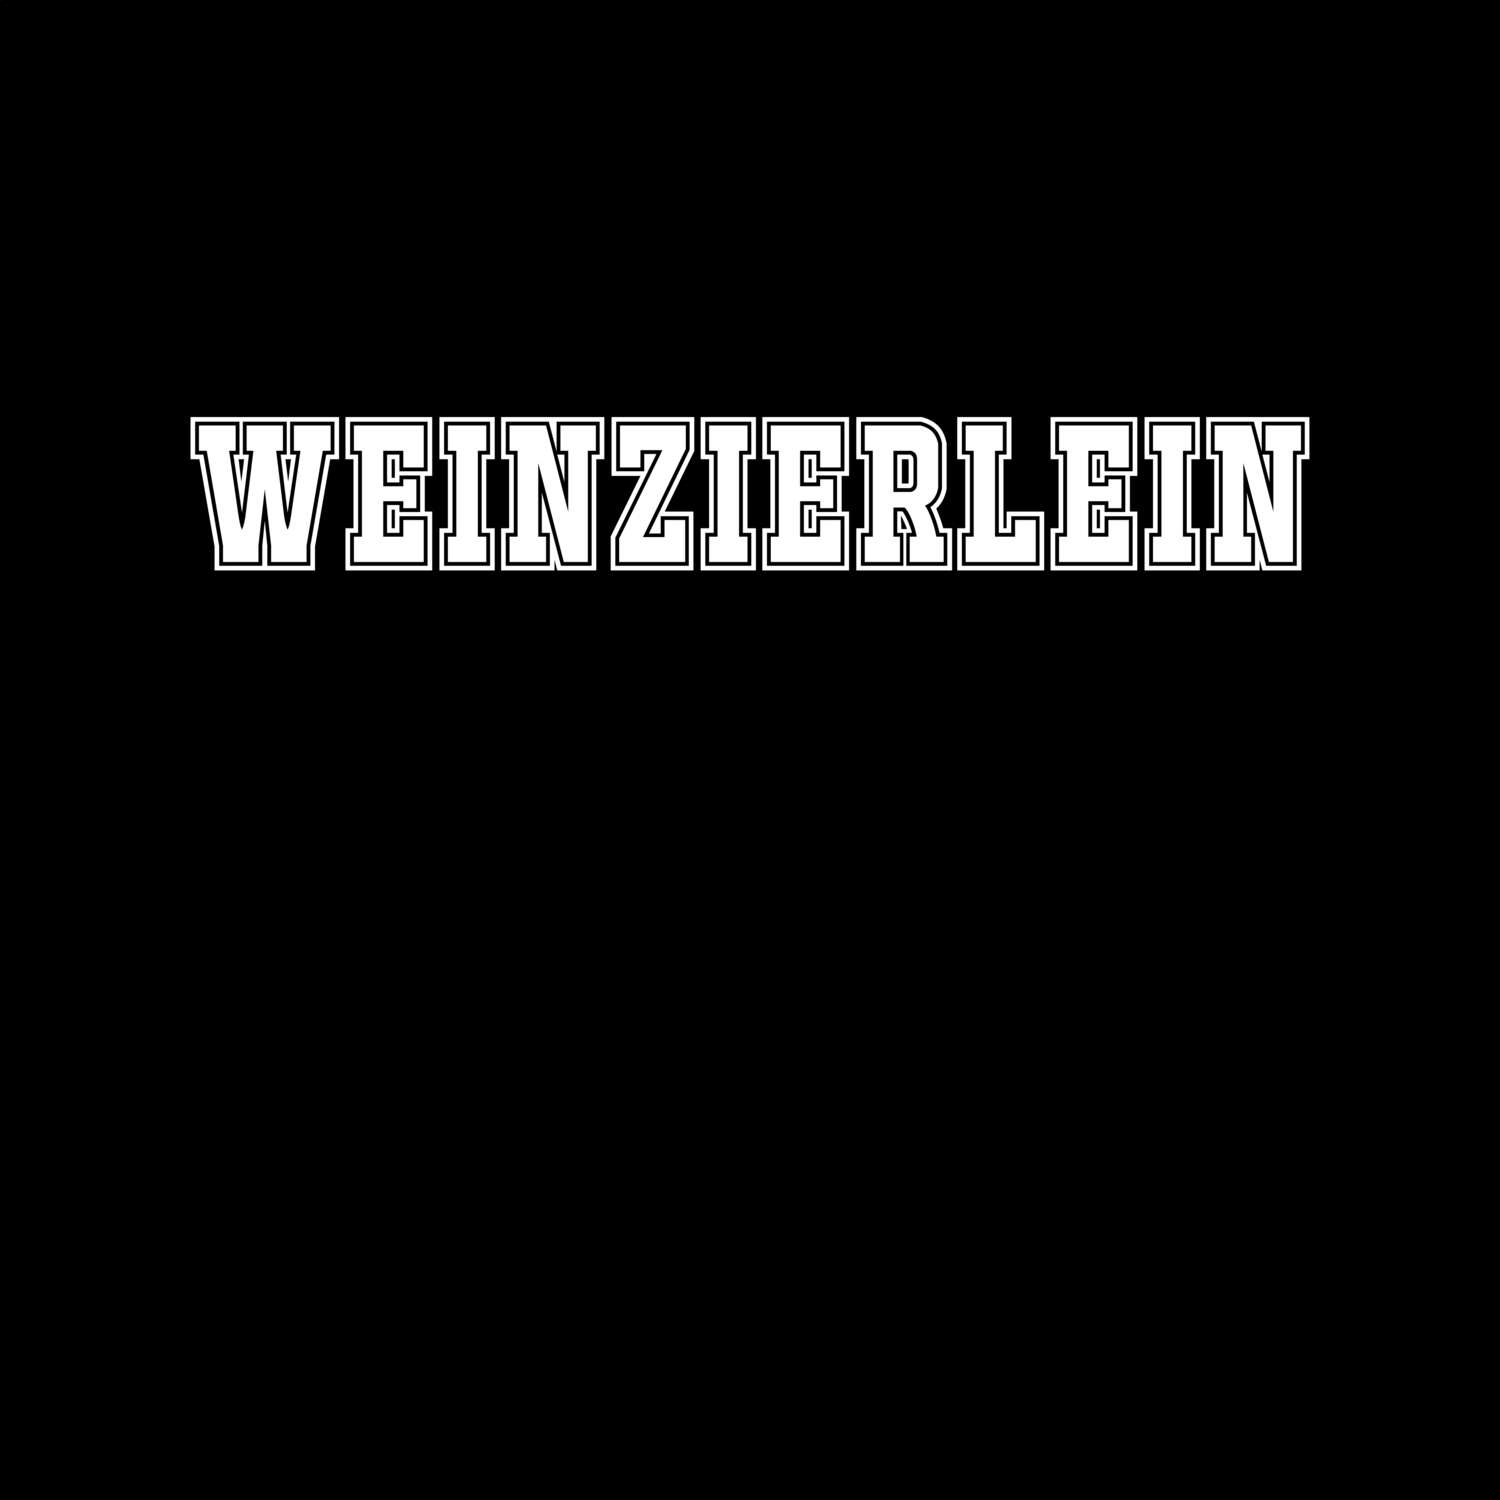 Weinzierlein T-Shirt »Classic«